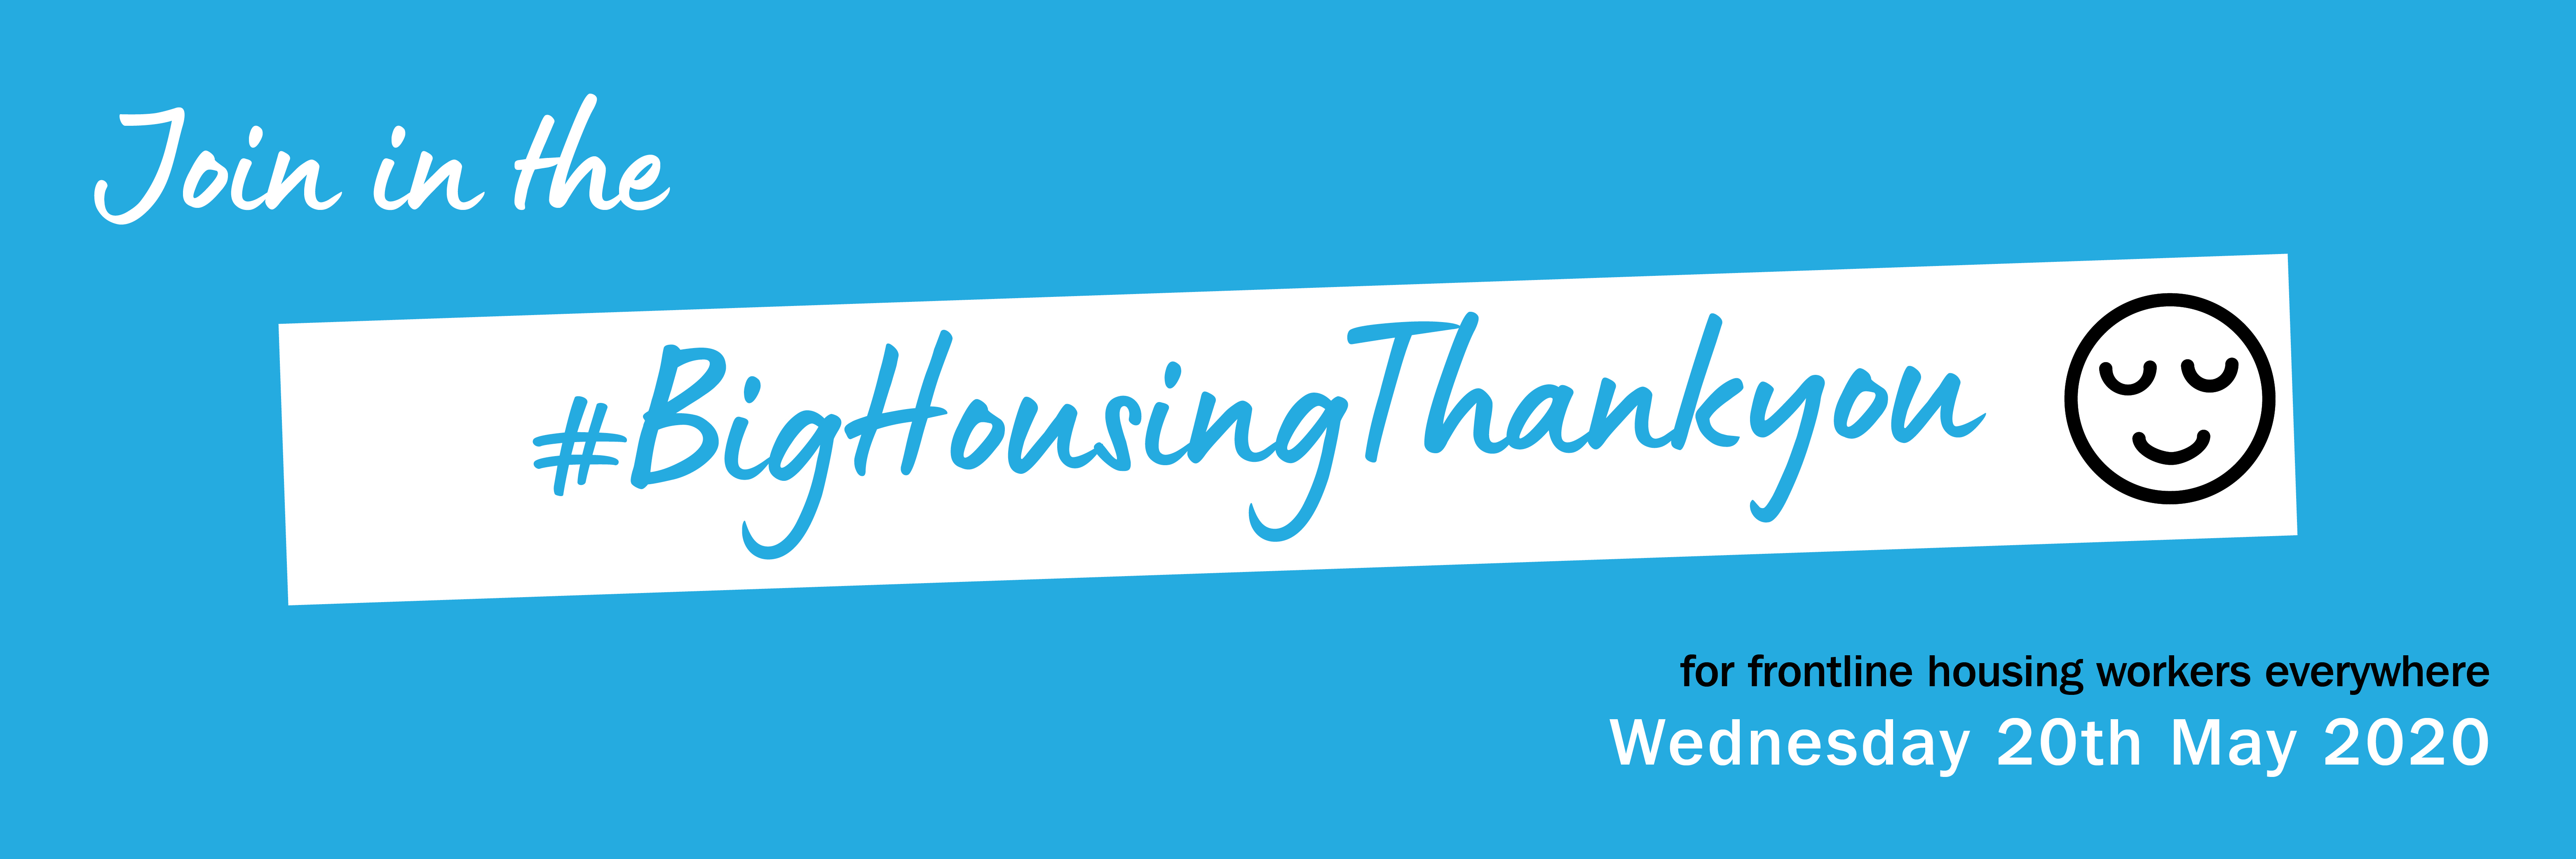 Big housing thank you Twitter banner - blue